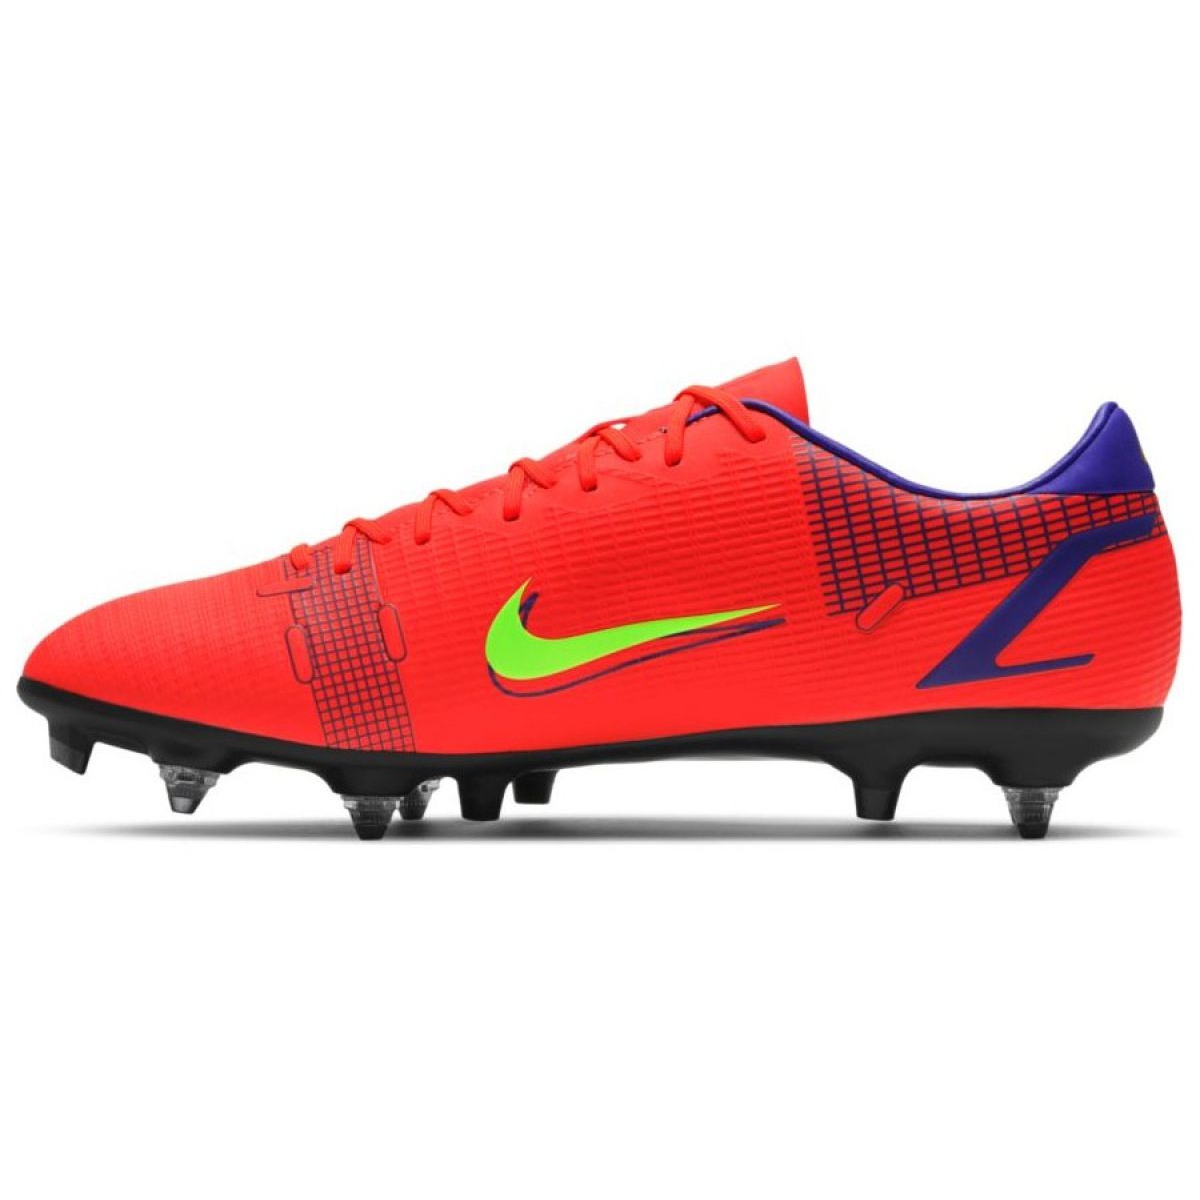 Buty piłkarskie Nike Mercurial Vapor 14 Academy SG-PRO Ac M CV0976 600 czerwone czerwone